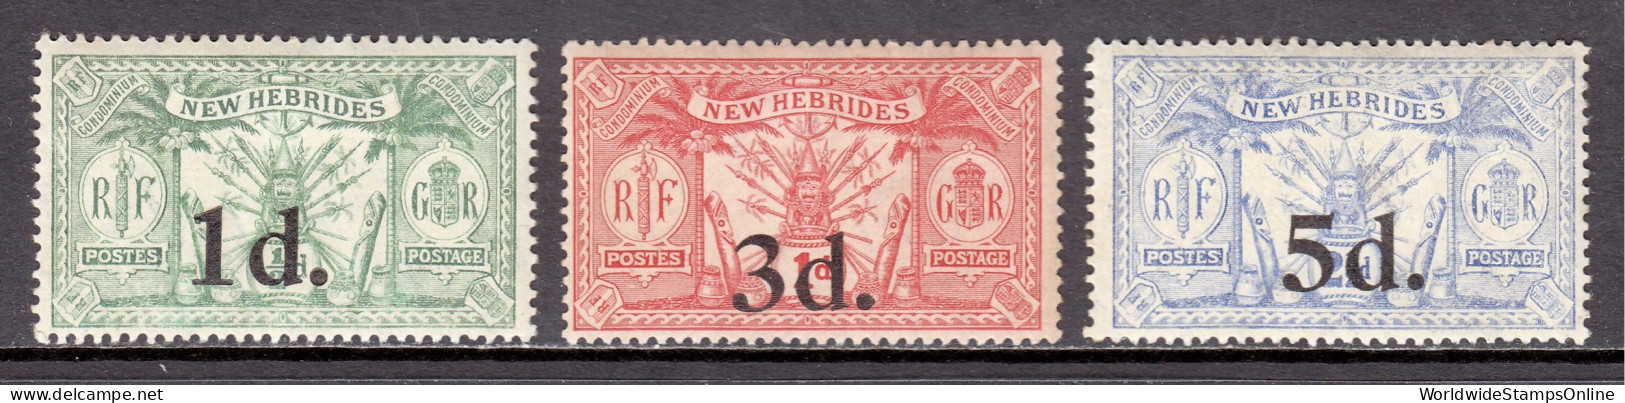 New Hebrides (EN) - Scott #38-40 - MH - Toning - SCV $17.50 - Unused Stamps